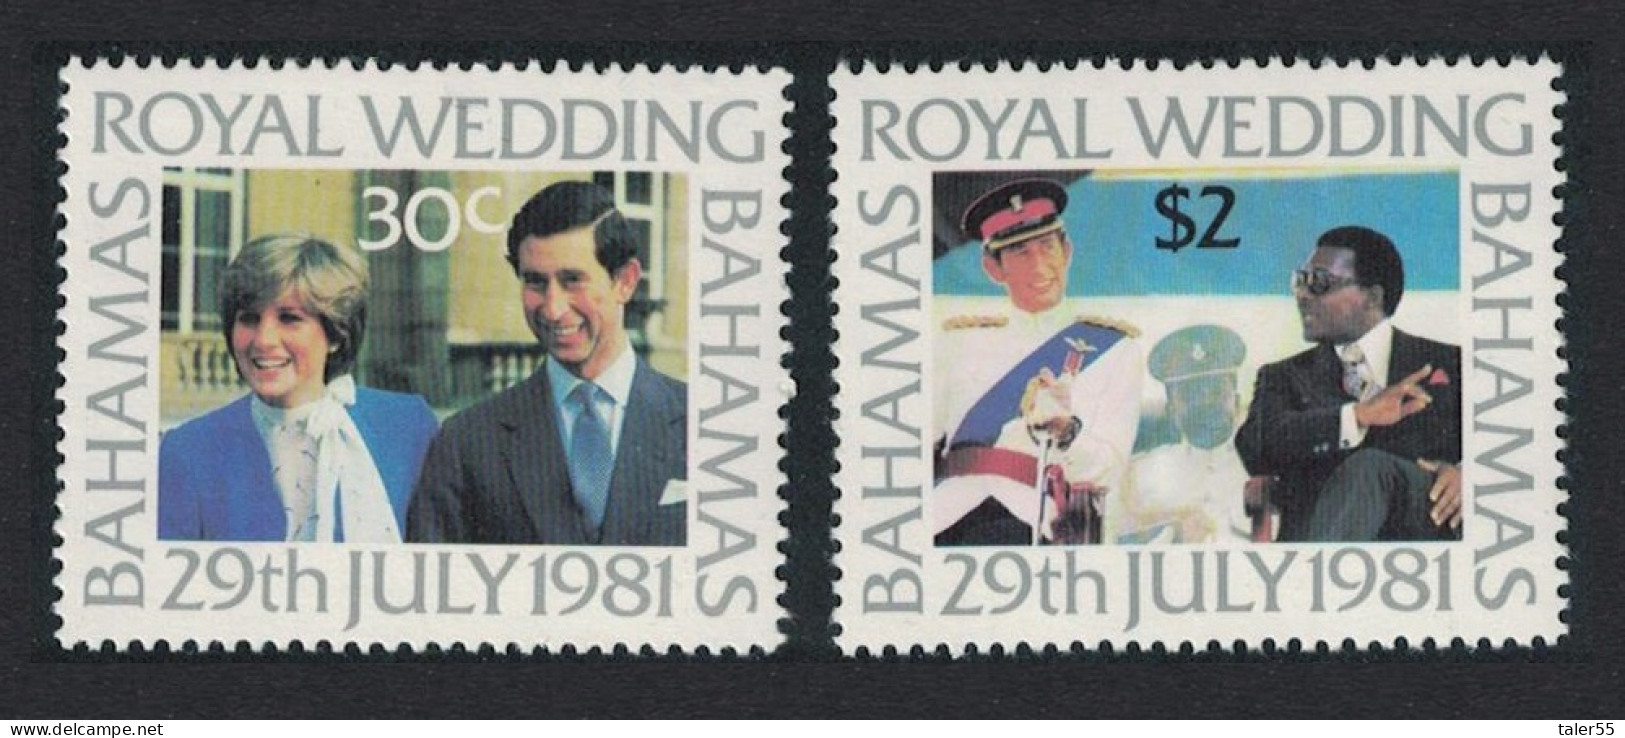 Bahamas Charles And Diana Royal Wedding 2v 1981 MNH SG#586-597 MI#480-481 - Bahamas (1973-...)